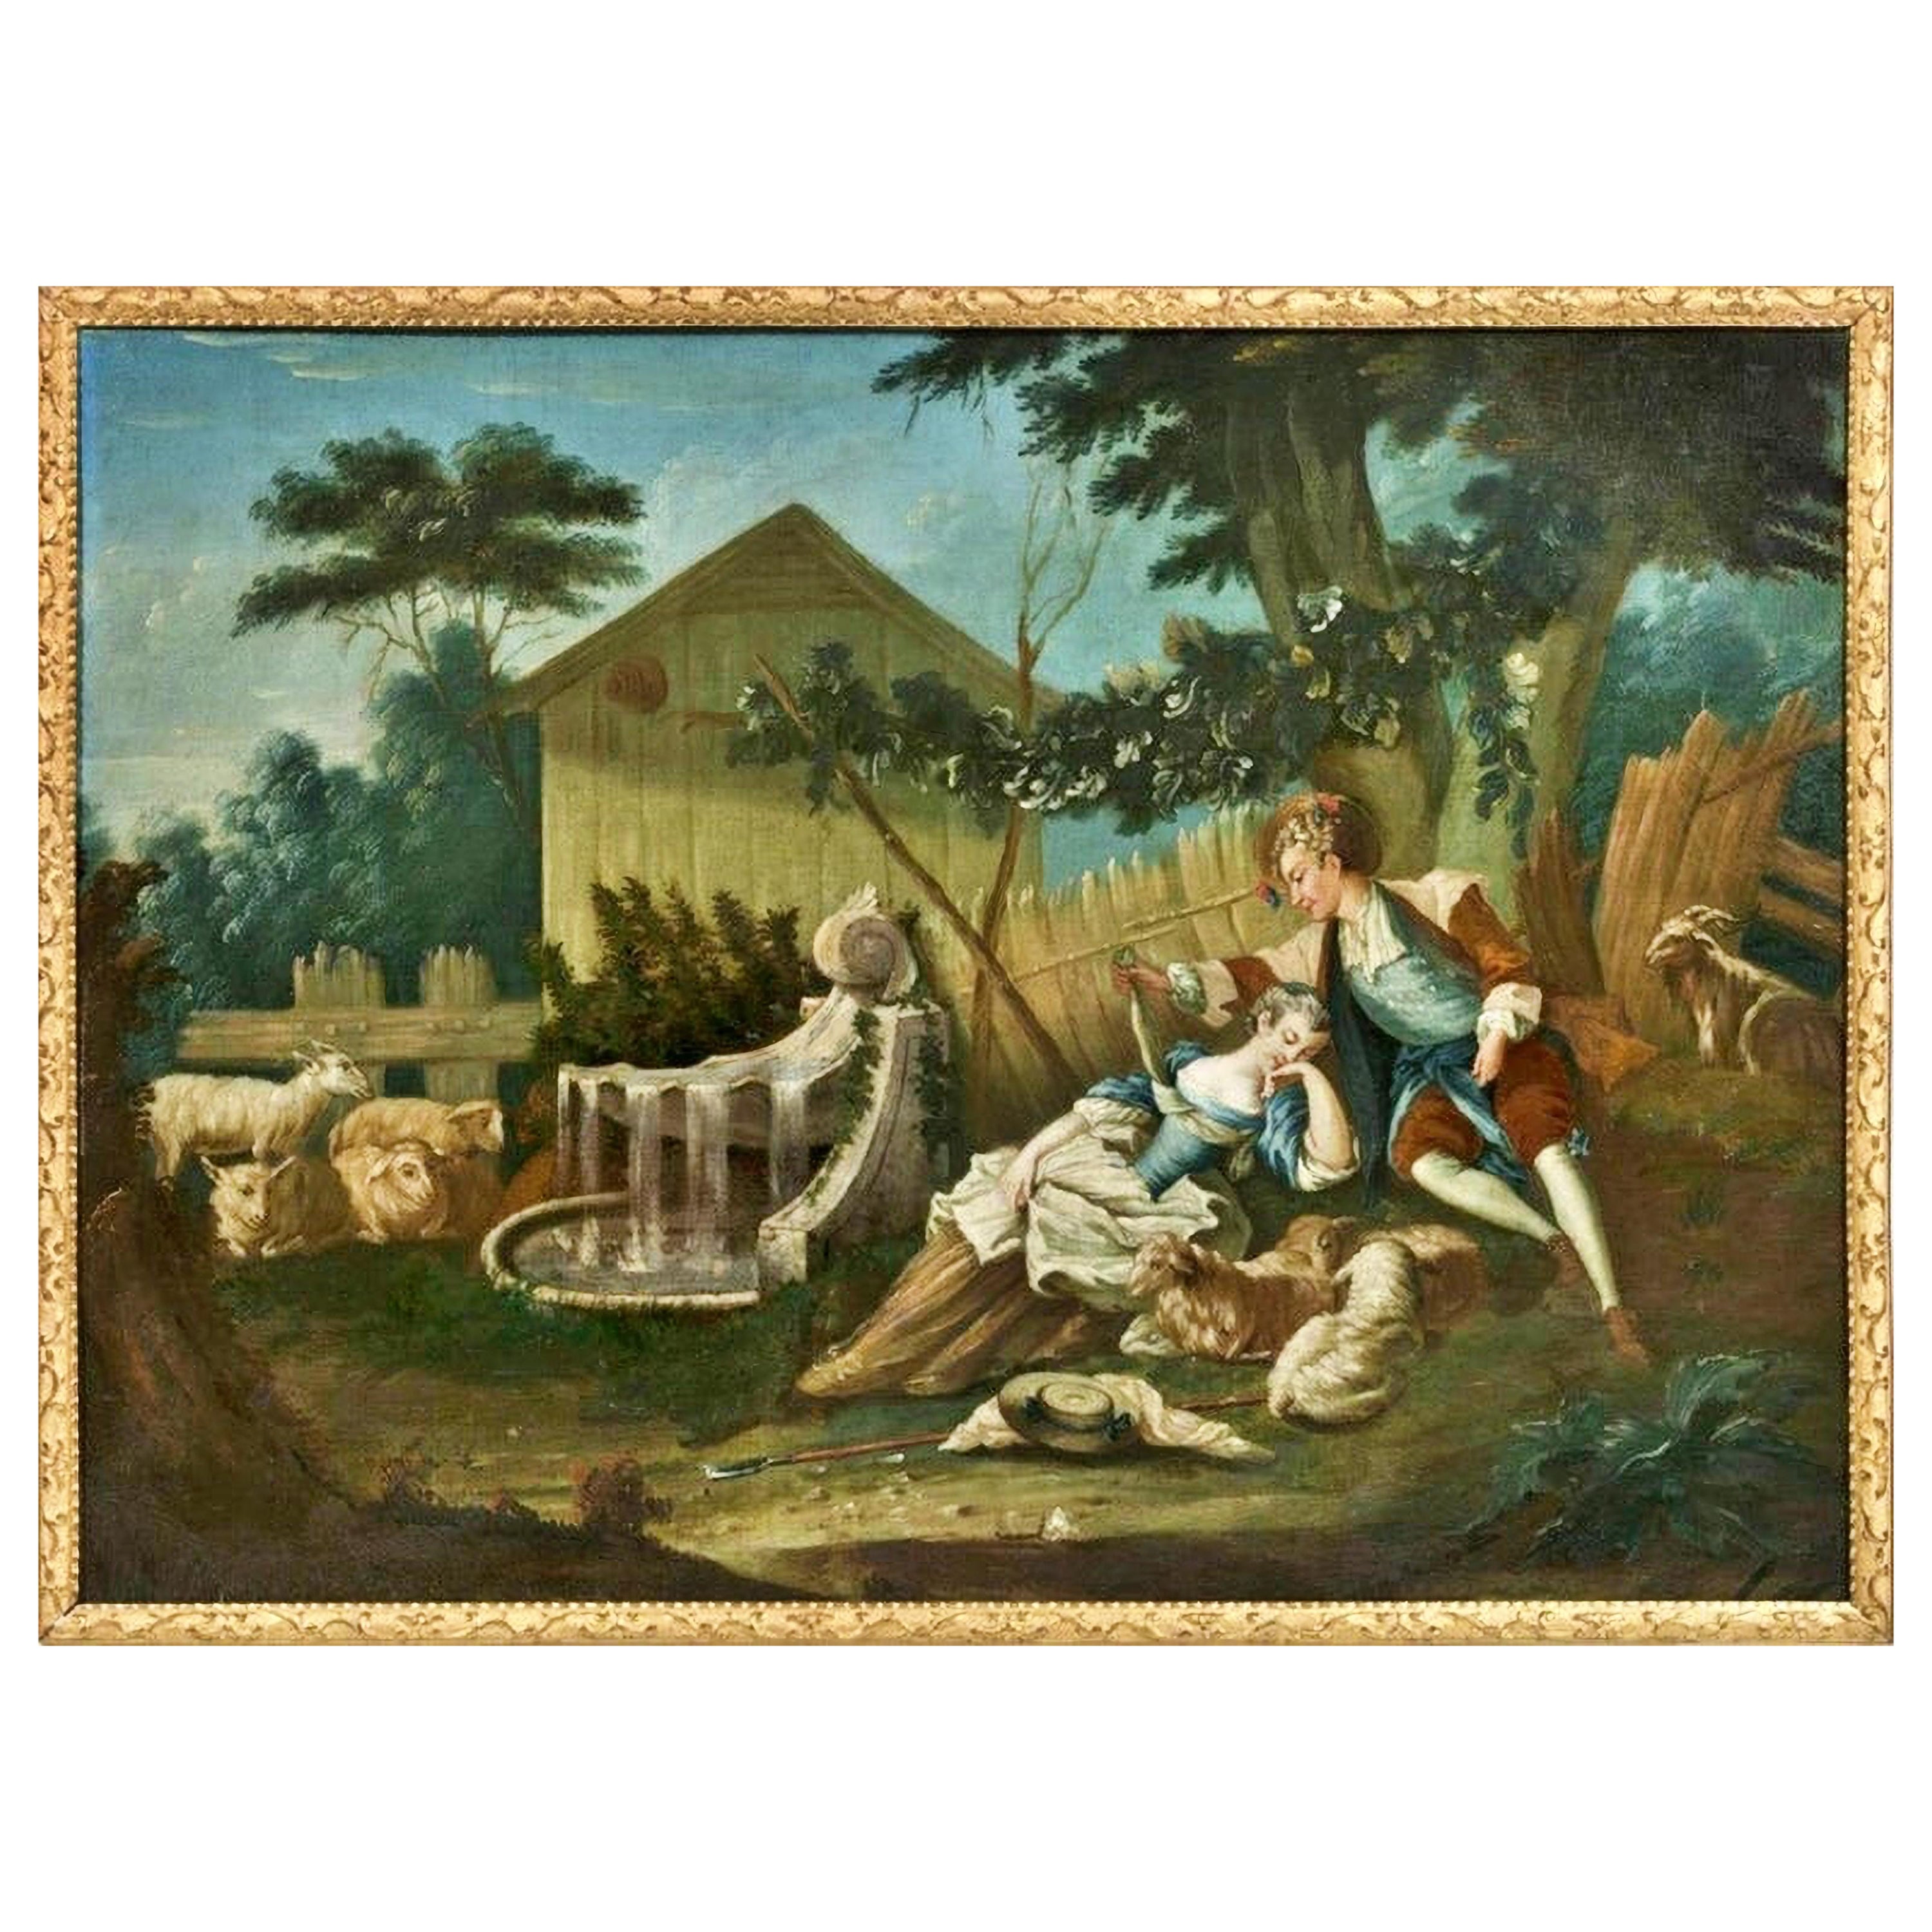 « Scène de Galant », huile sur toile, école française, 18e siècle